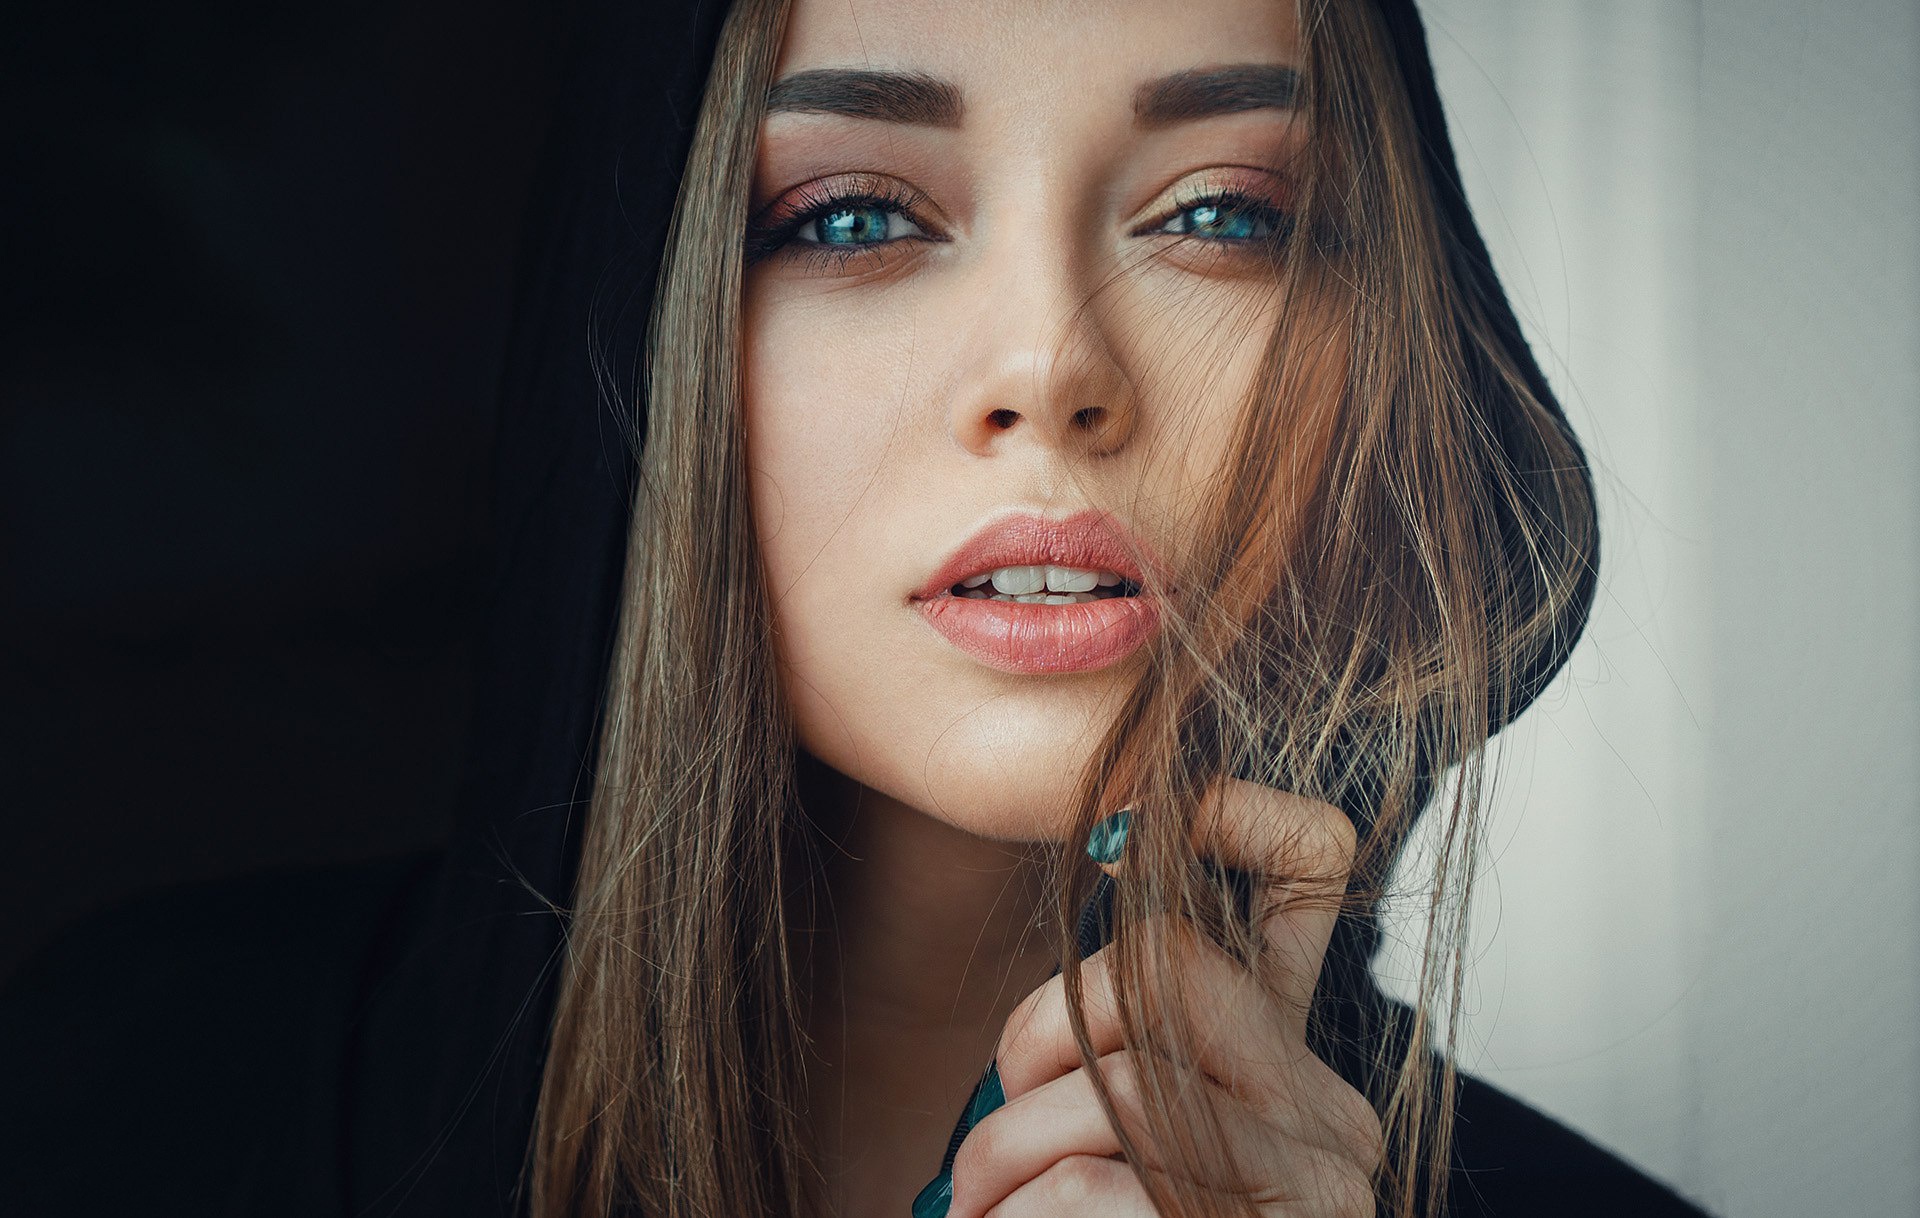 Download Blue Eyes Brunette Model Woman Face Hd Wallpaper By Evgeny Freyer 